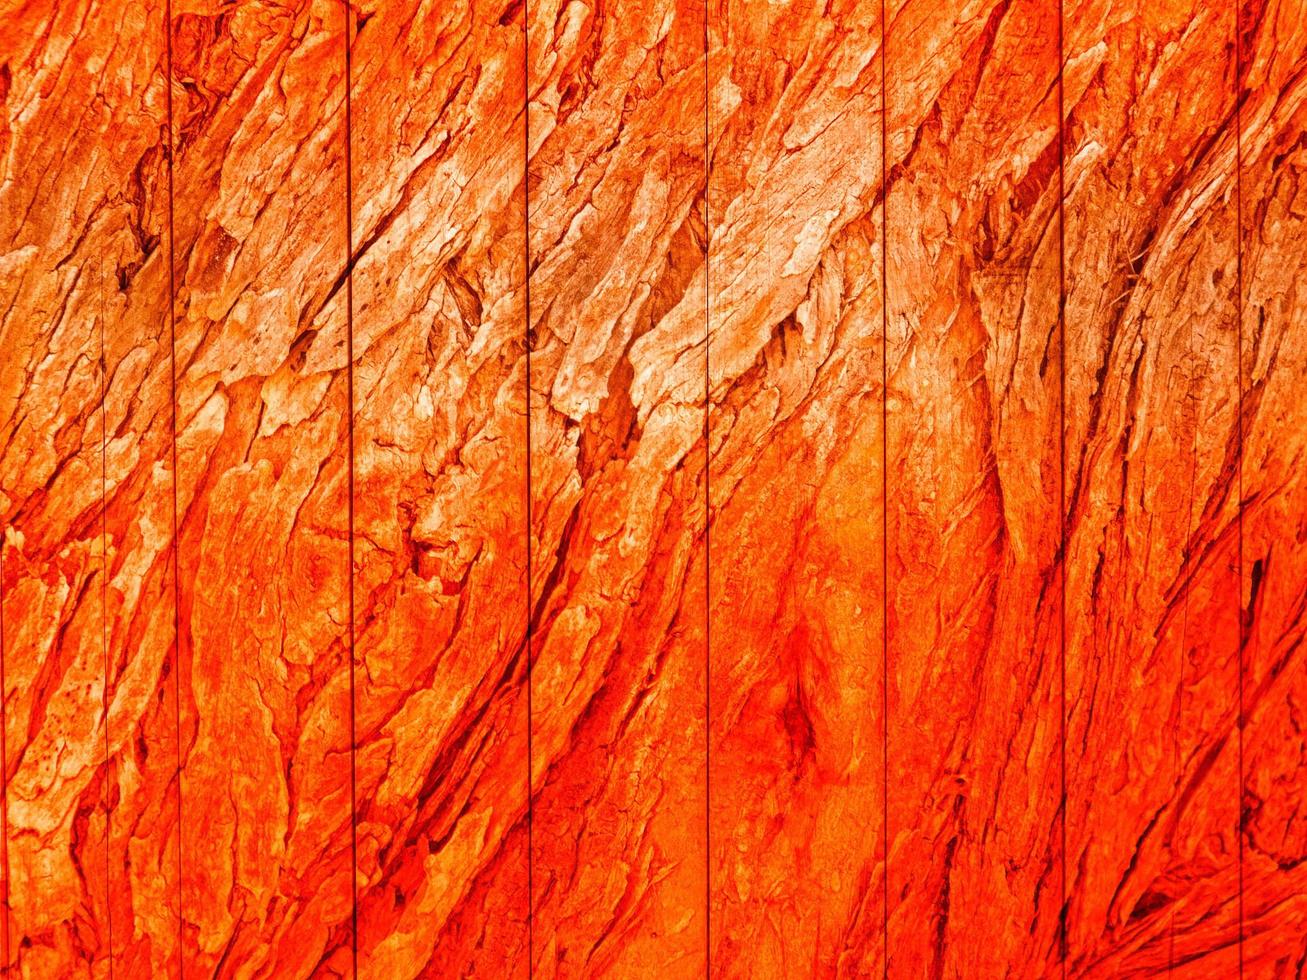 orange Holzstruktur foto